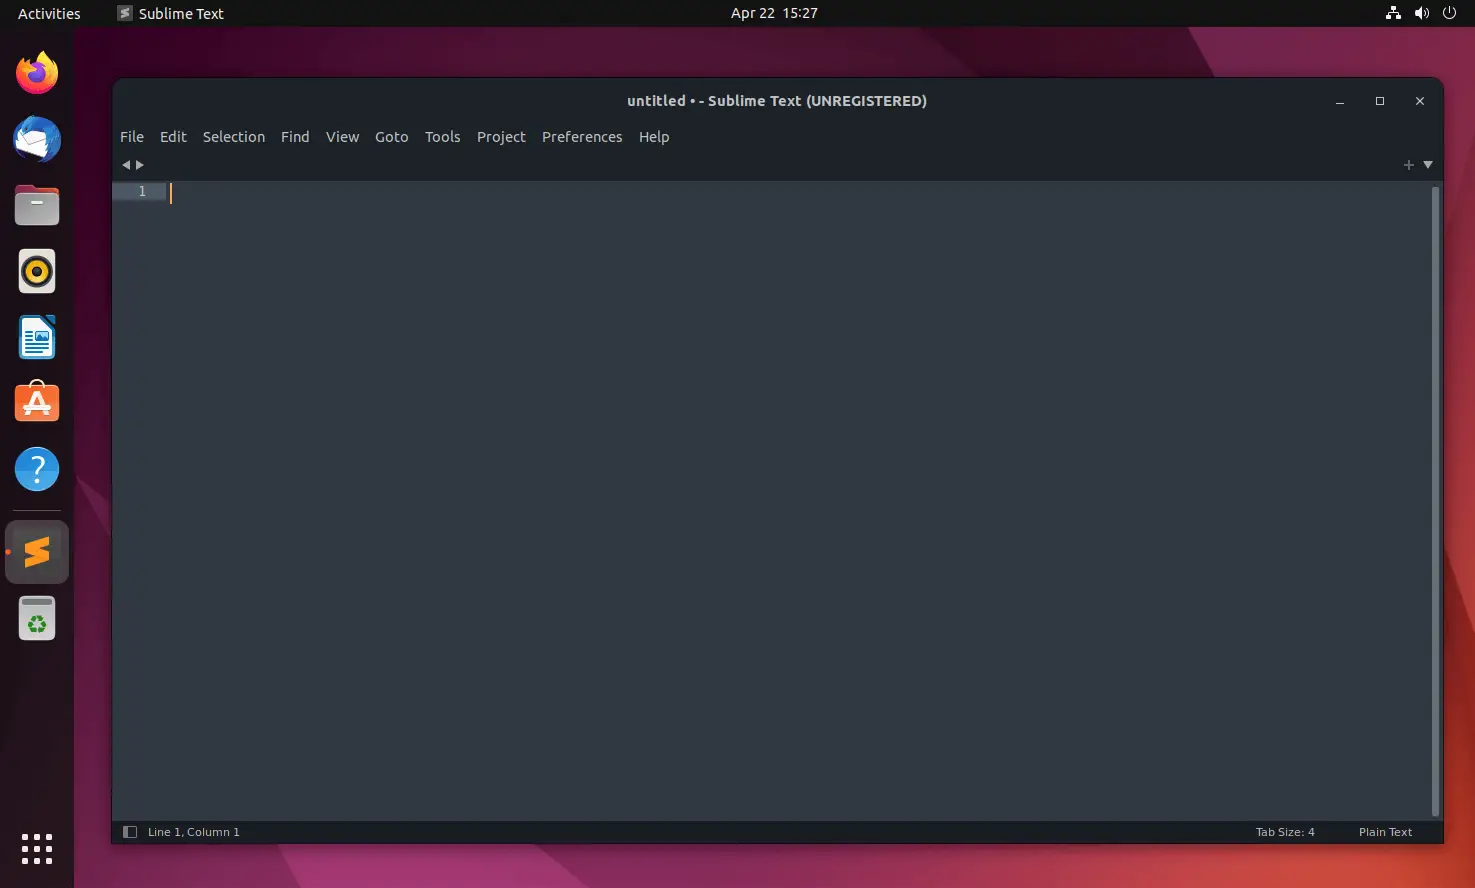 Sublime Text on Ubuntu 22.04